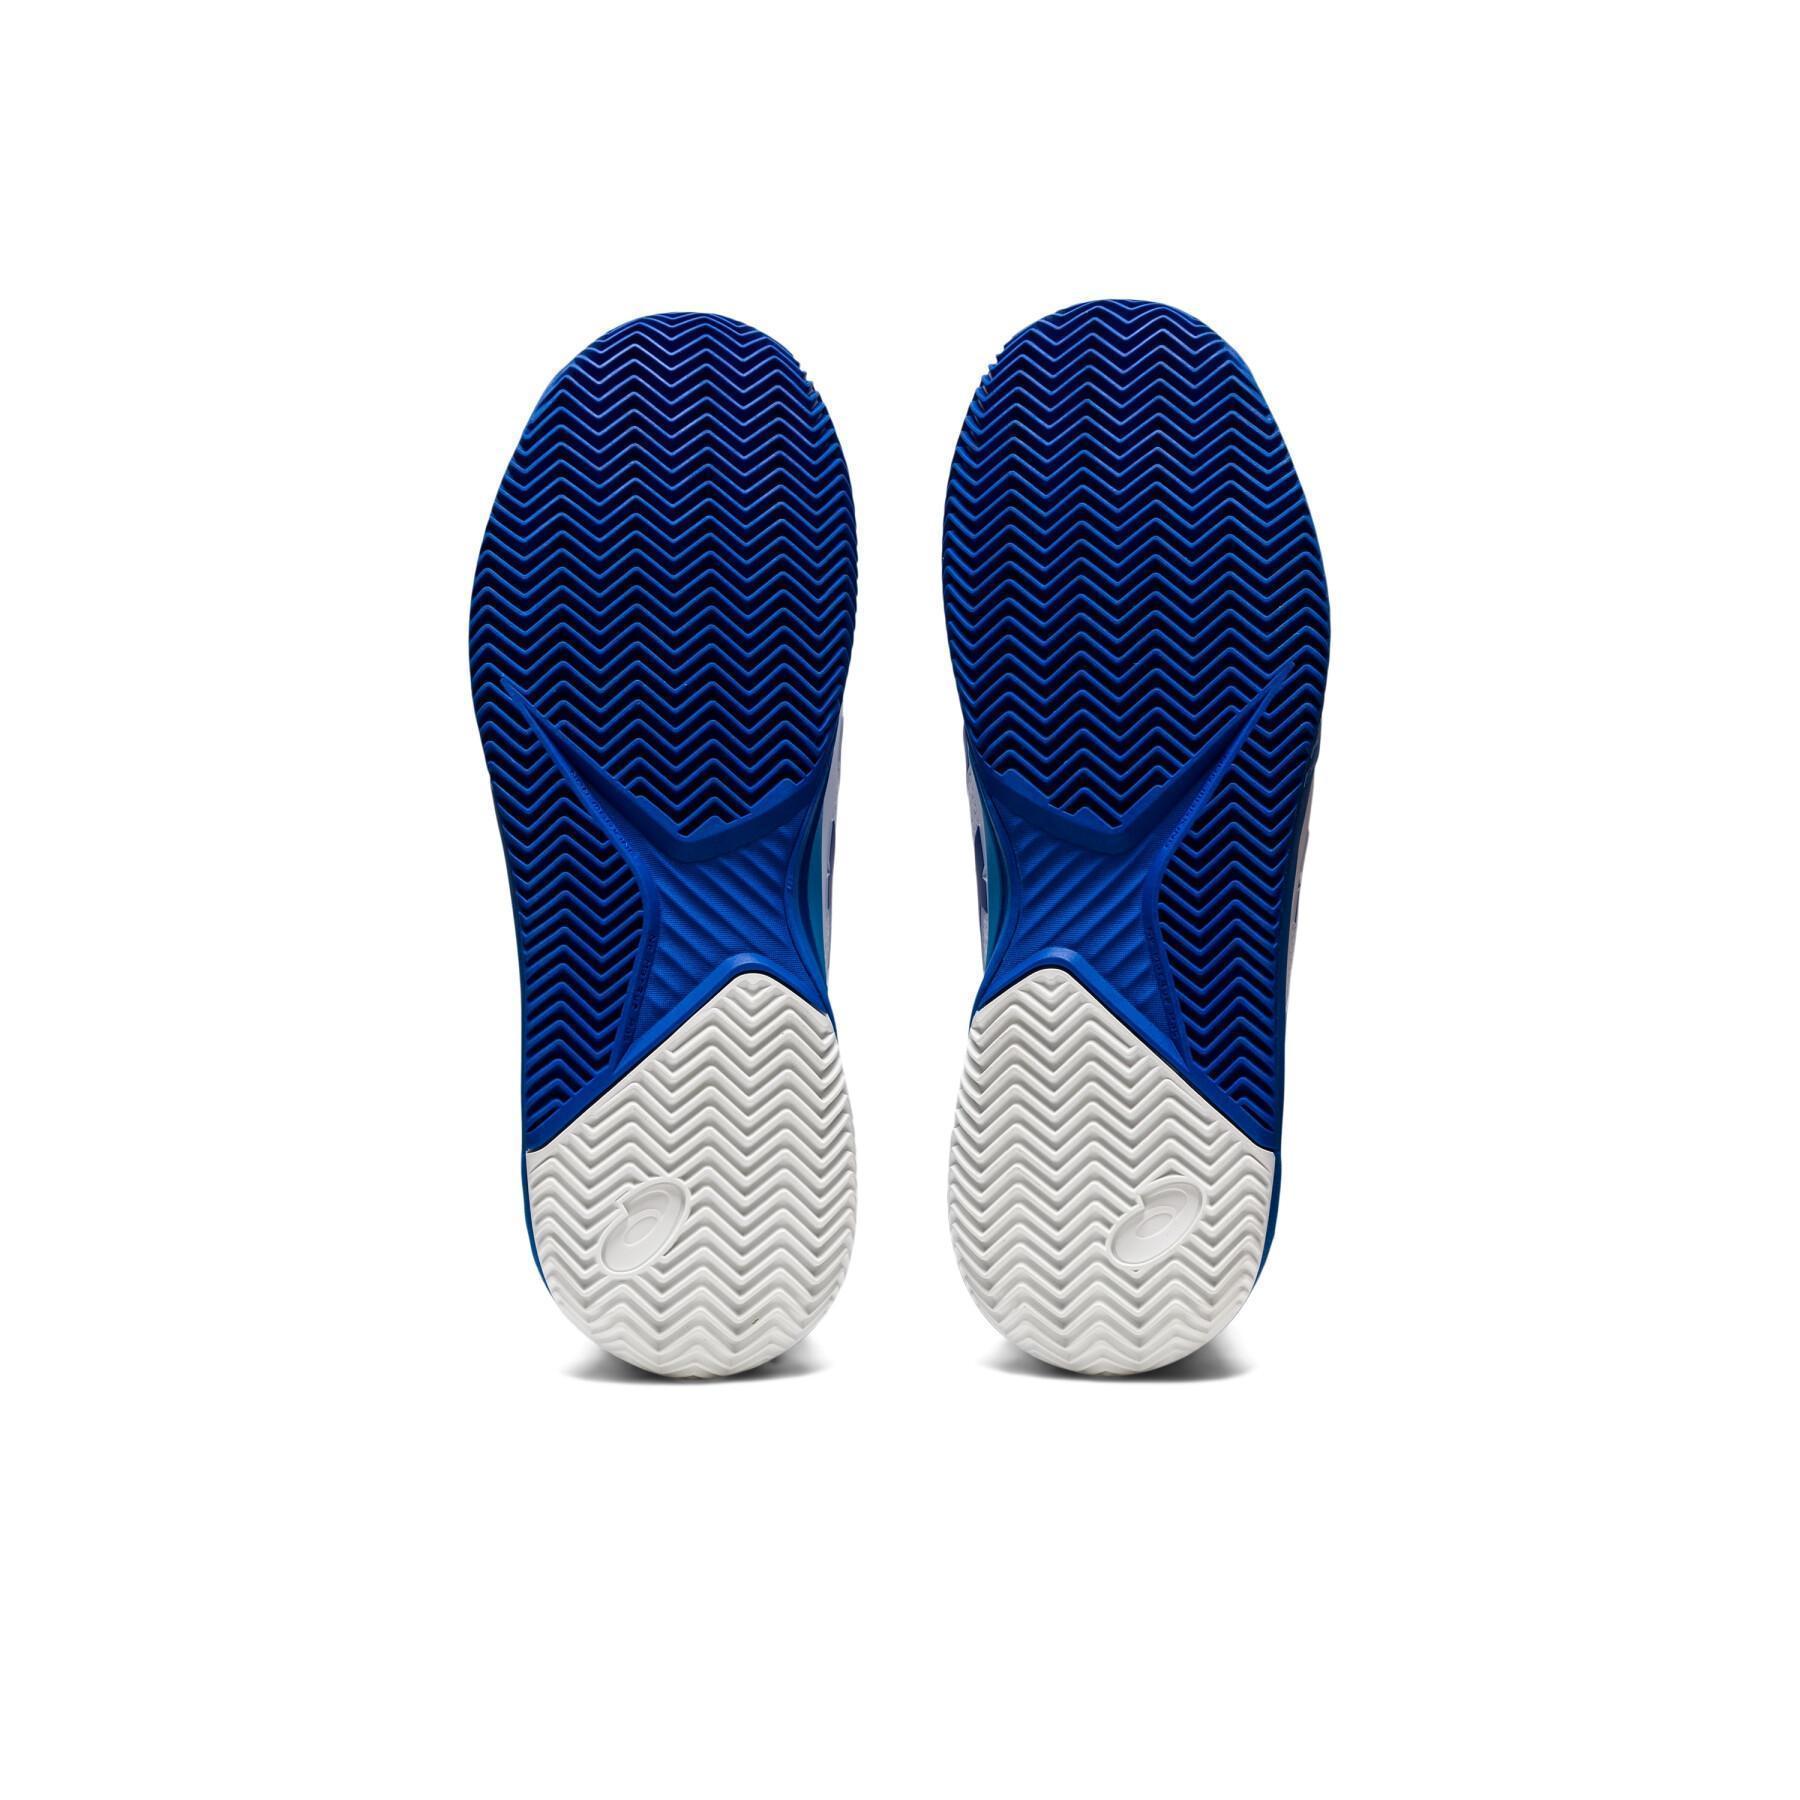 Sapatos de ténis Asics Gel-resolution 8 clay